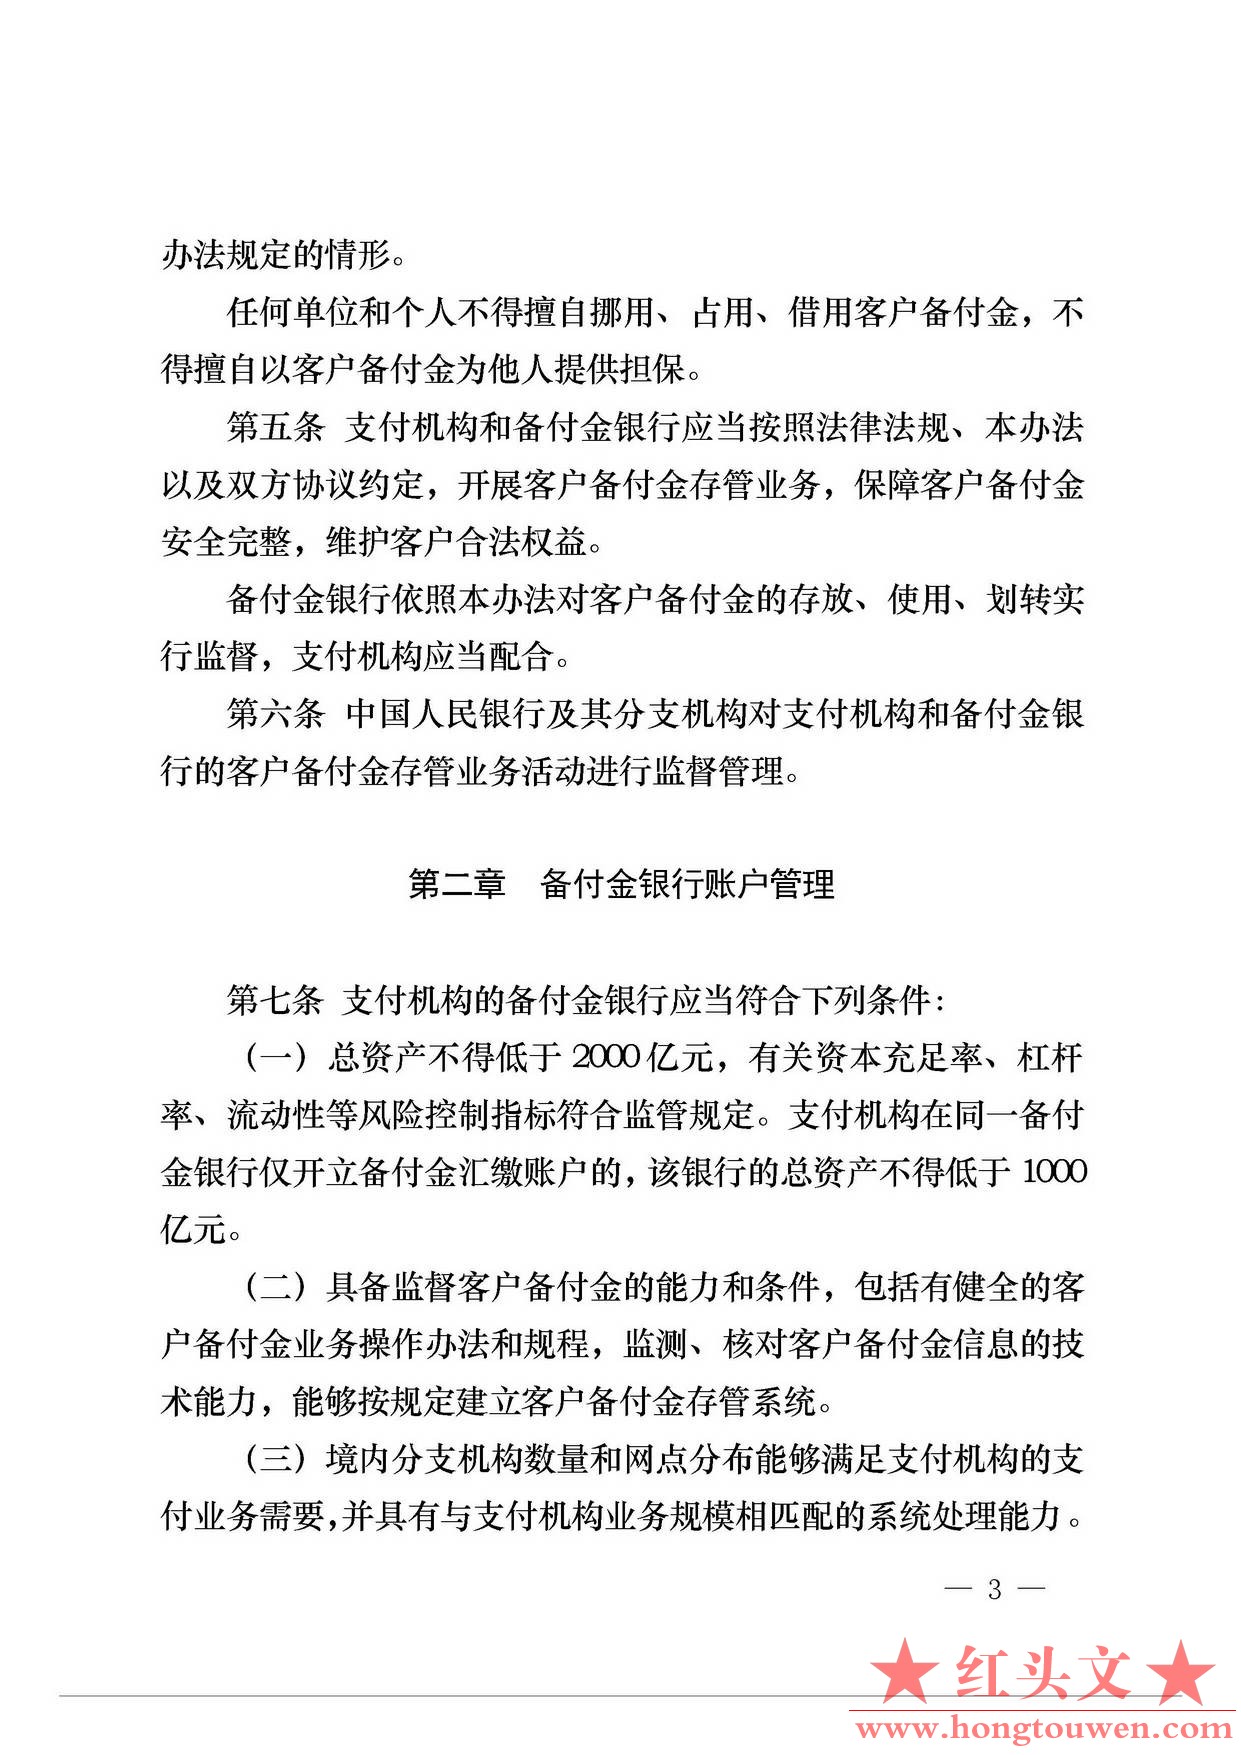 中国人民银行公告[2013]6号-《支付机构客户备付金存管办法》_页面_03.jpg.jpg